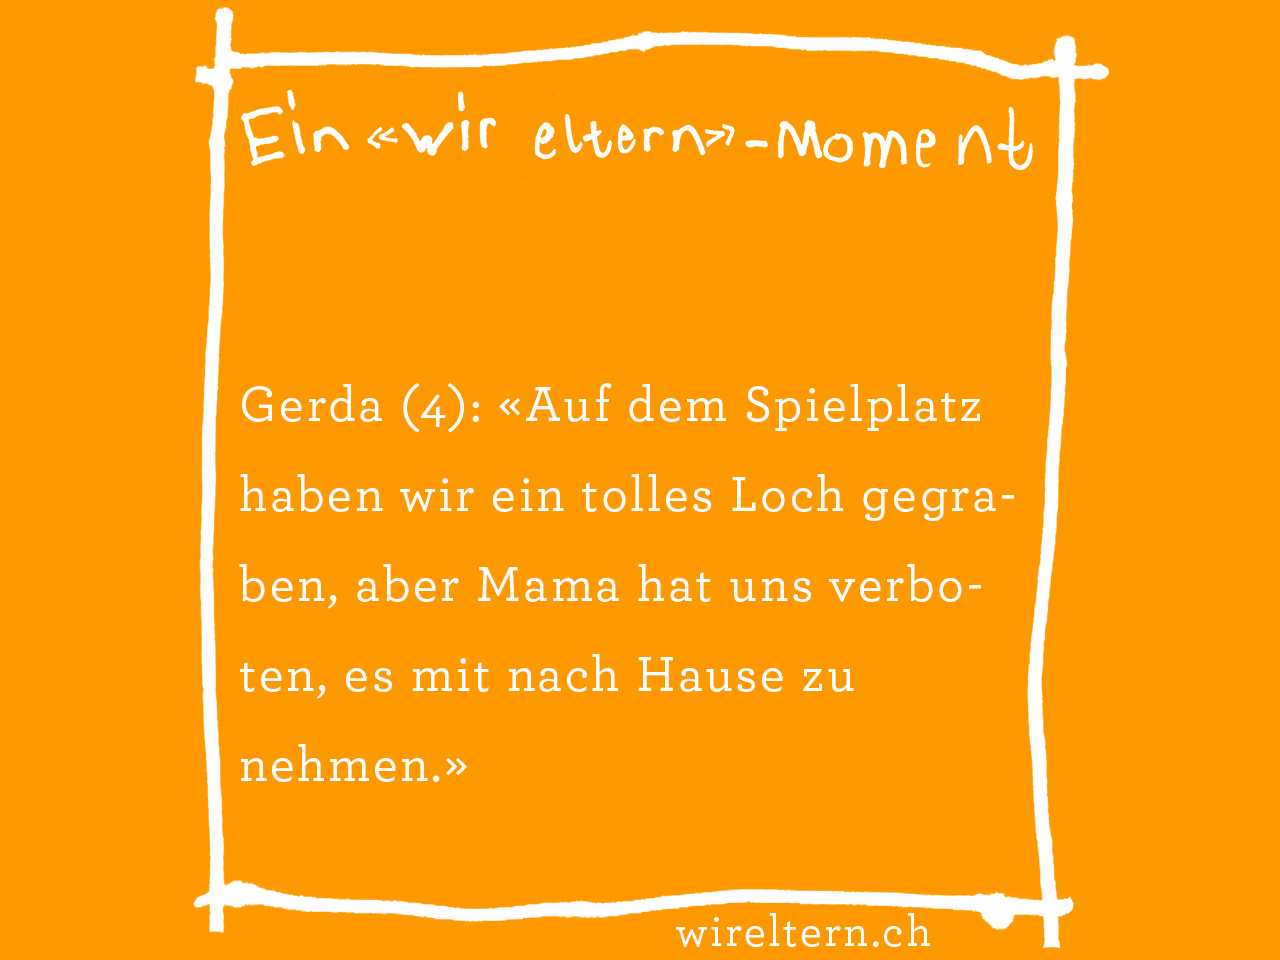 Gerda (4): «Auf dem Spielplatz haben wir ein tolles Loch gegraben, aber Mama hat uns verboten, es mit nach Hause zu nehmen.»